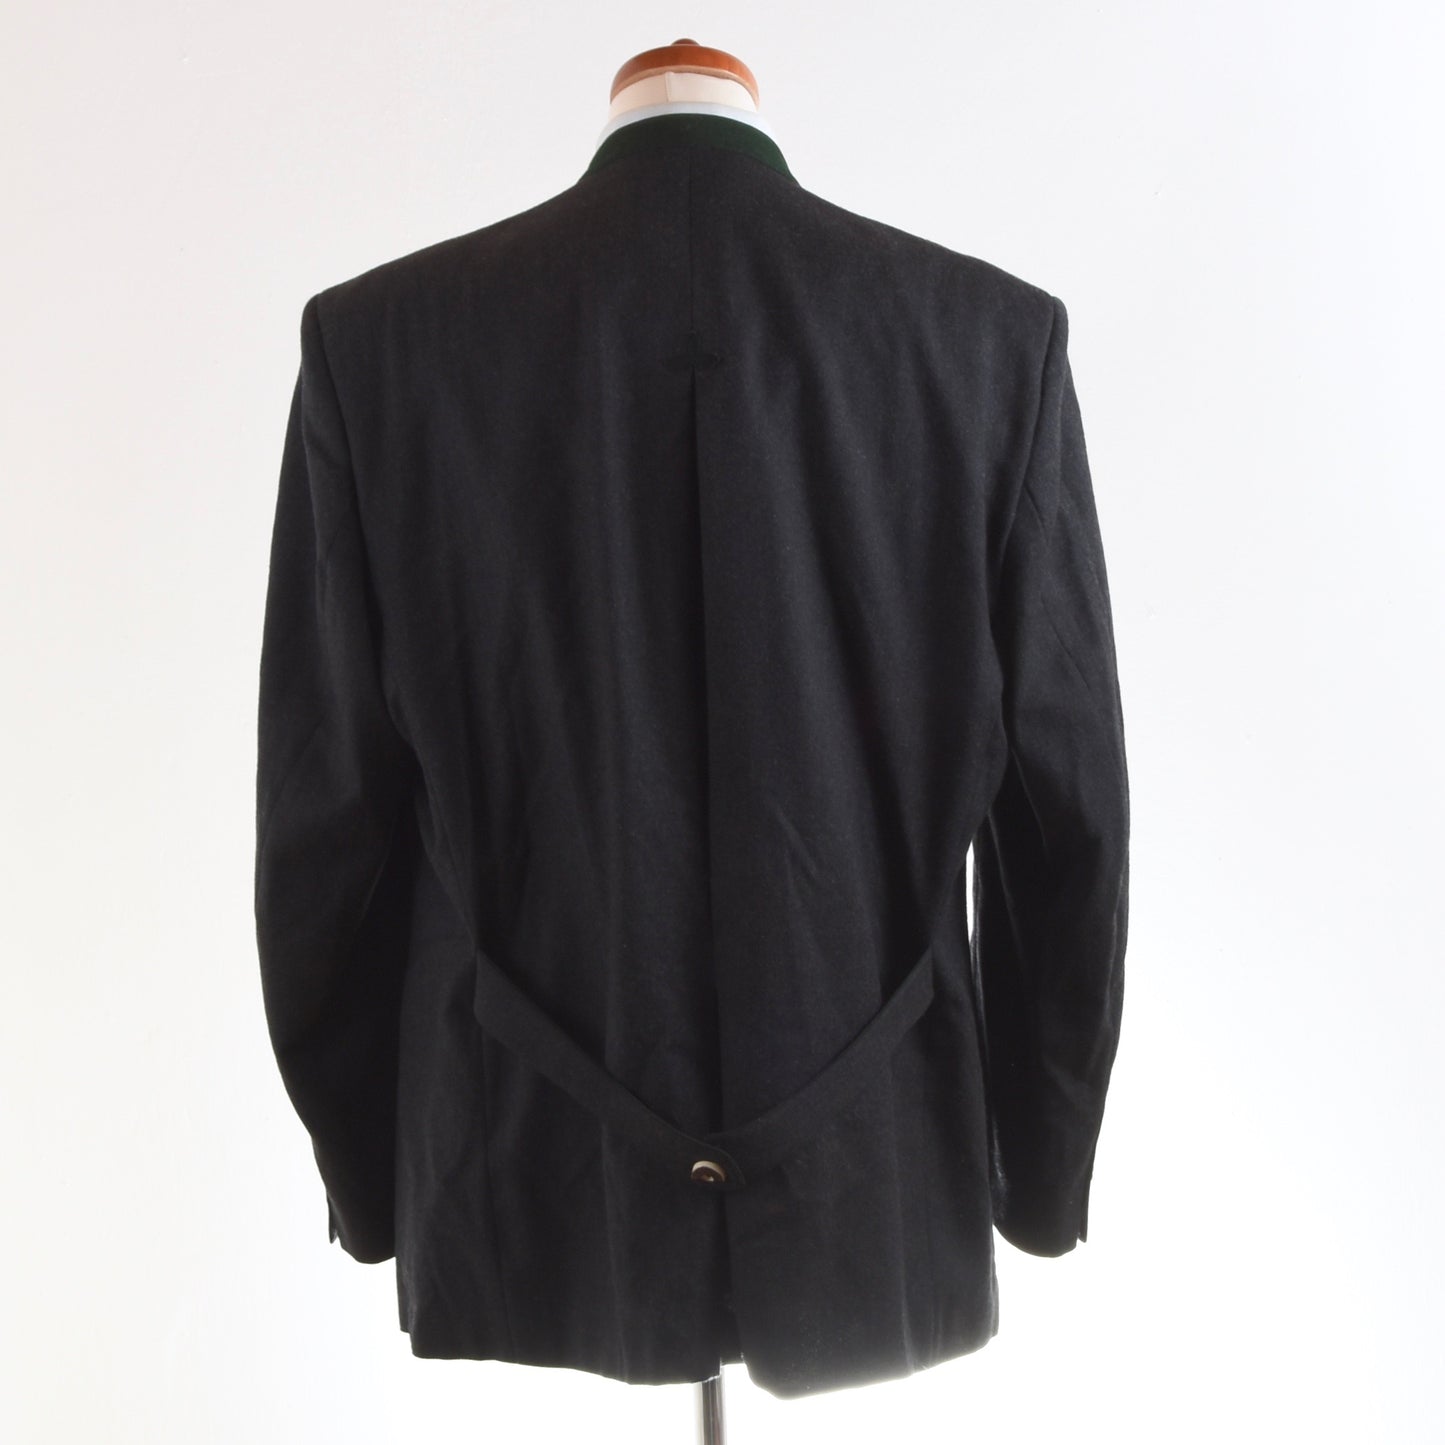 Lodenfrey Wool Janker/Jacket Size 54 - Charcoal